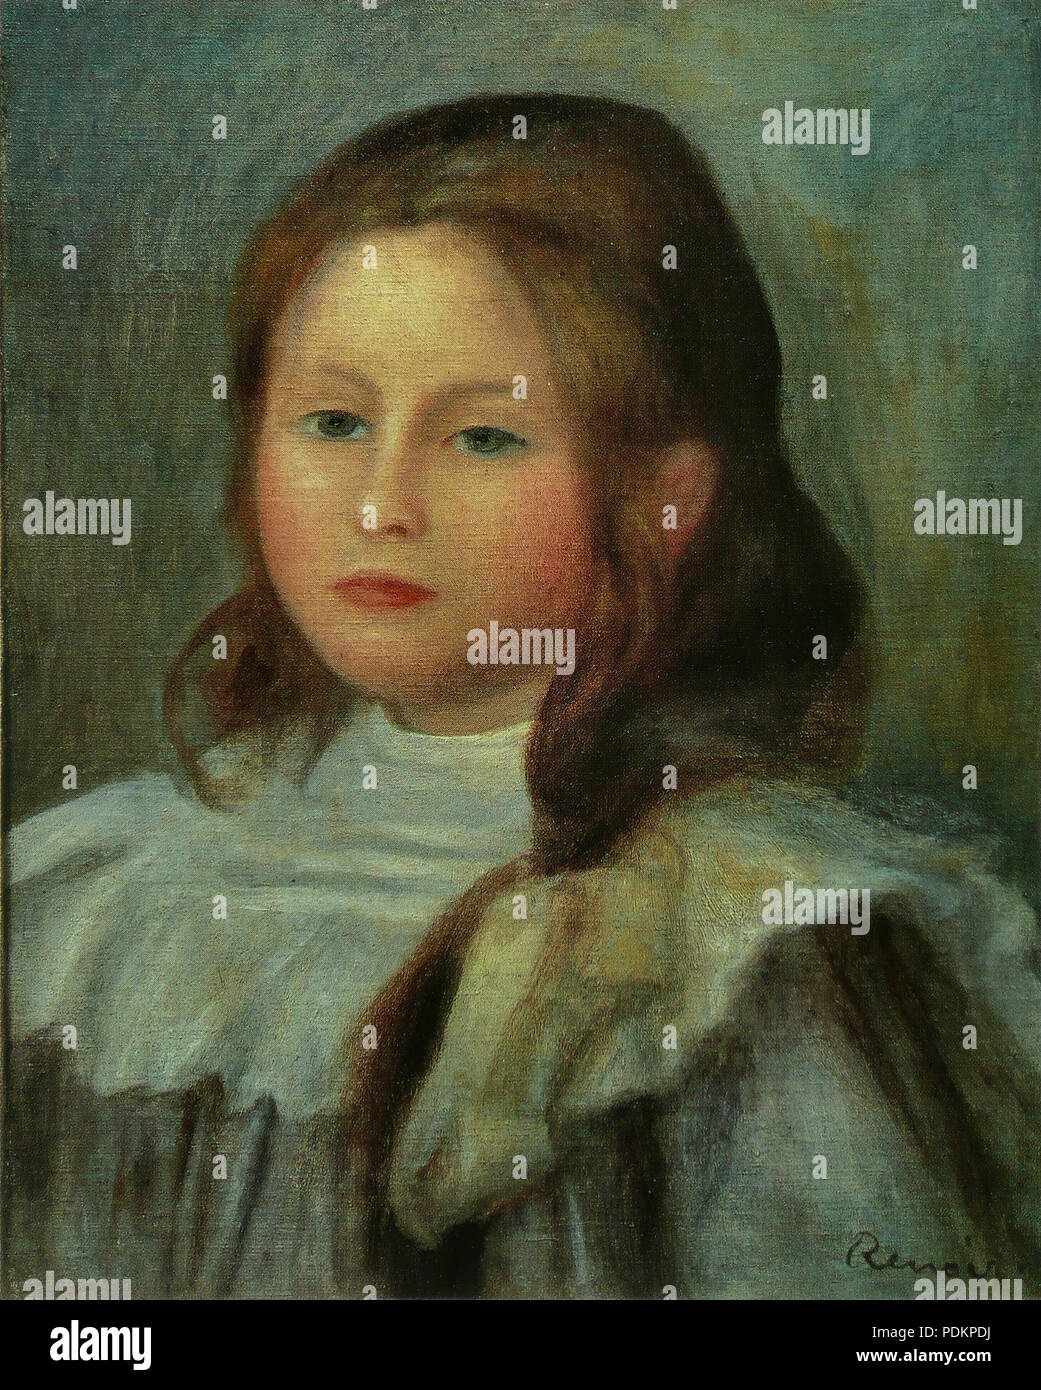 1 Pierre-Auguste Renoir - Portrait d'enfant Stock Photo - Alamy